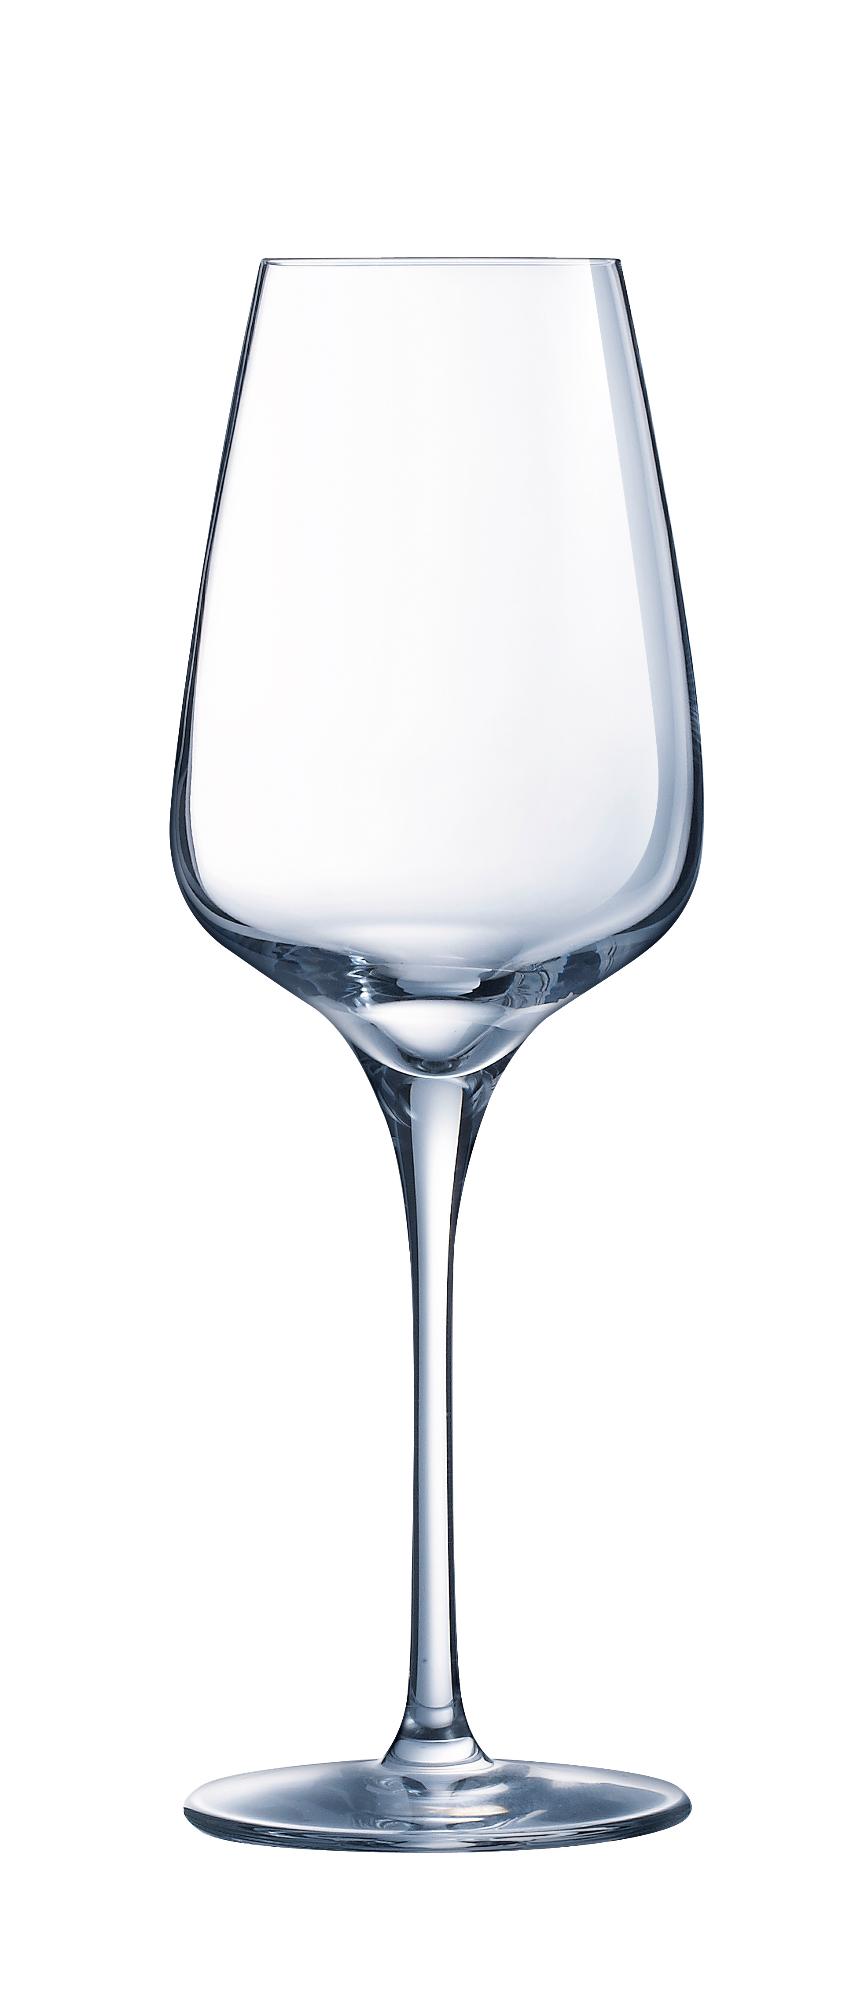 Sublym wine glass, 350ml